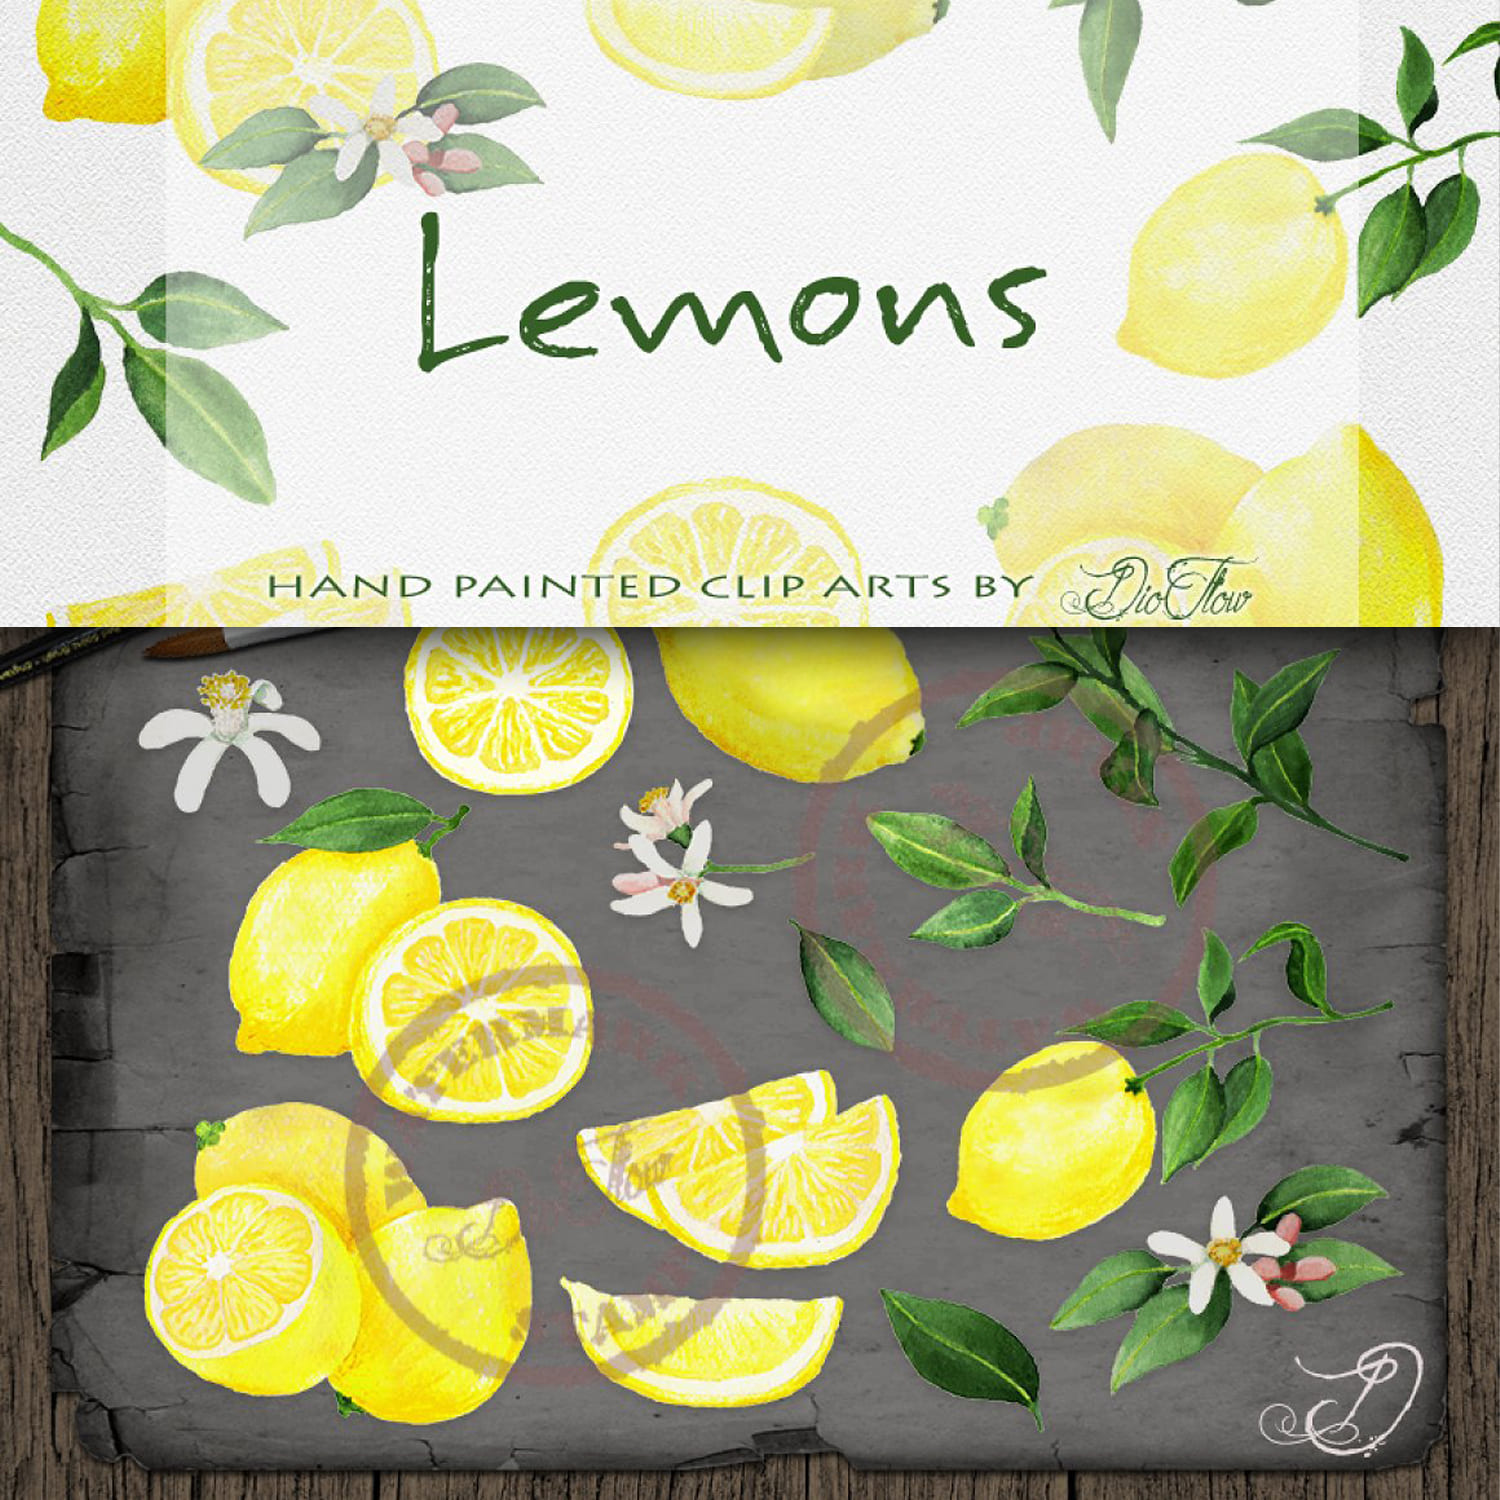 Lemon Watercolor Clipart cover.